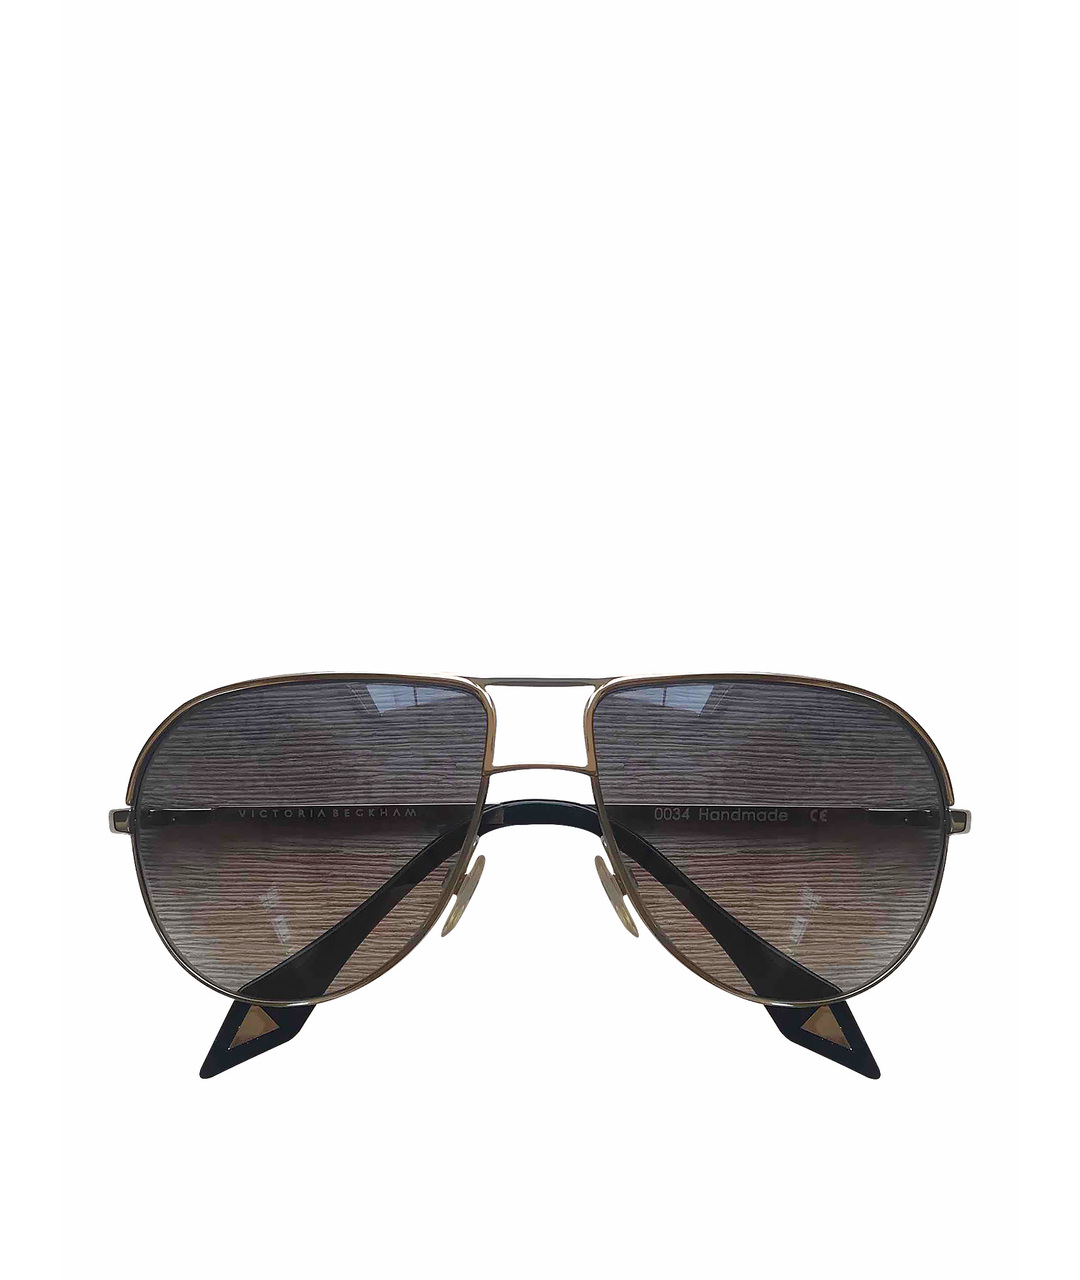 VICTORIA BECKHAM Серые металлические солнцезащитные очки, фото 1